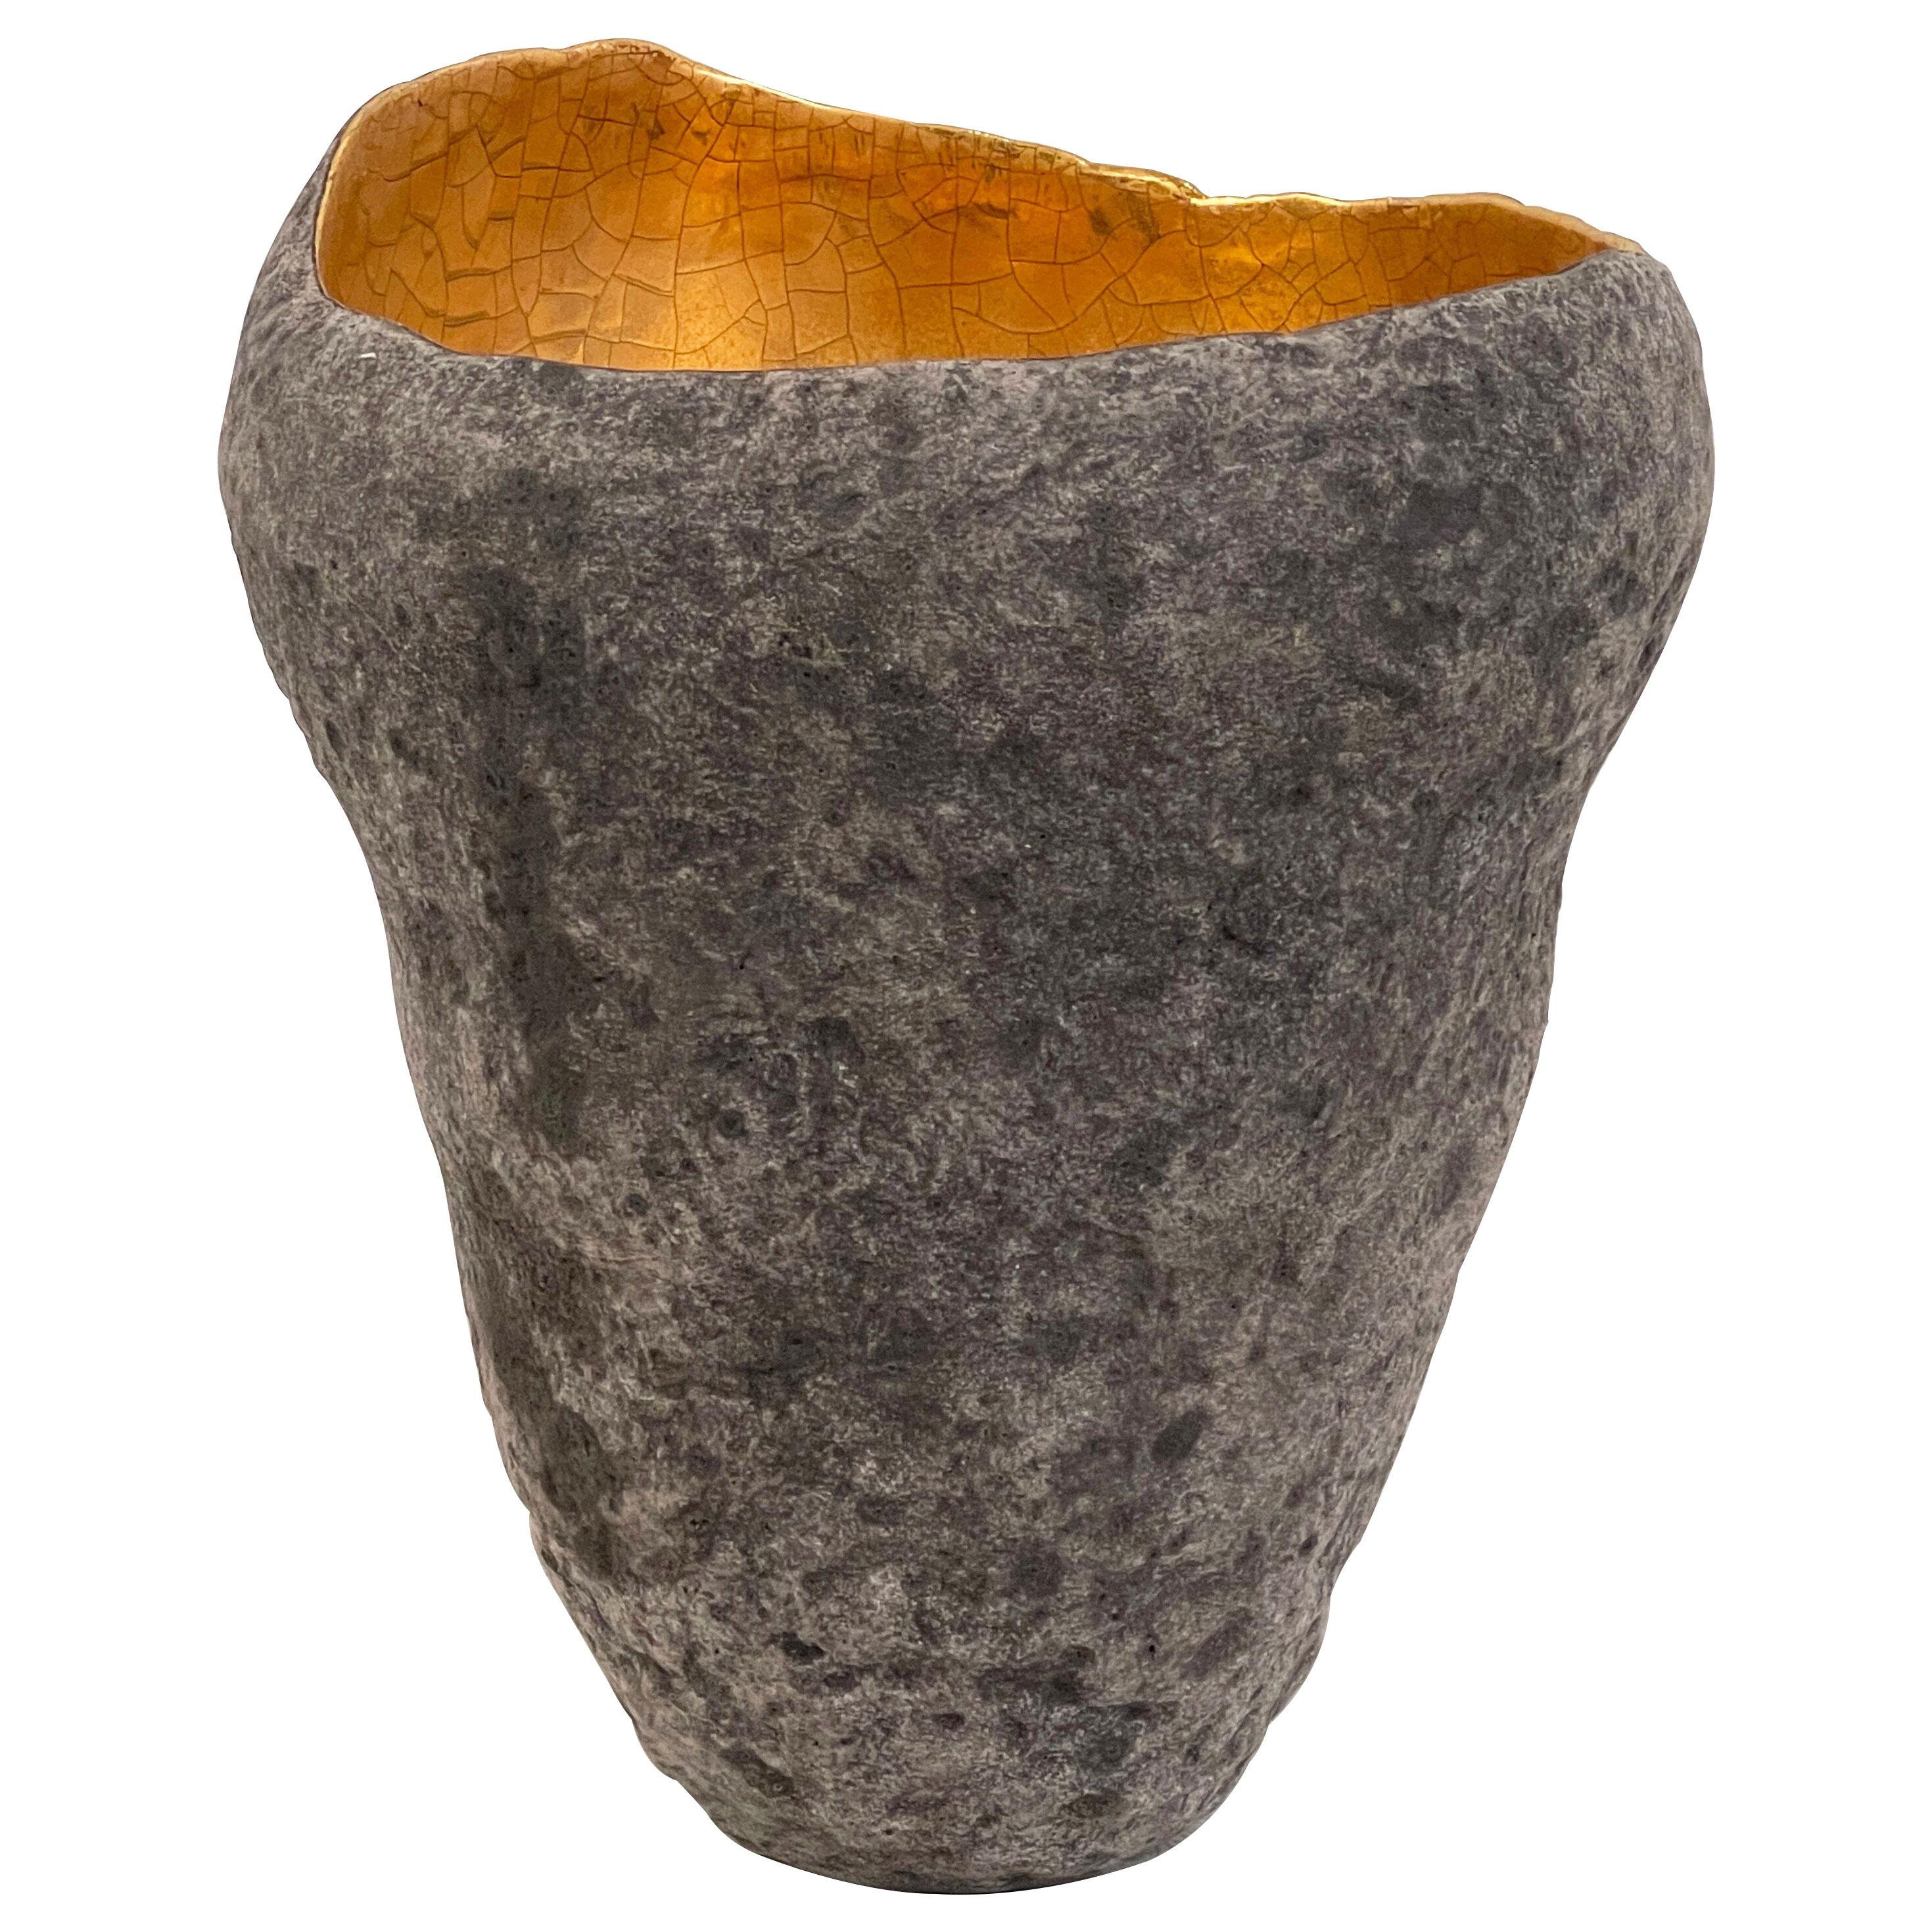 Ceramic Vase with Gold